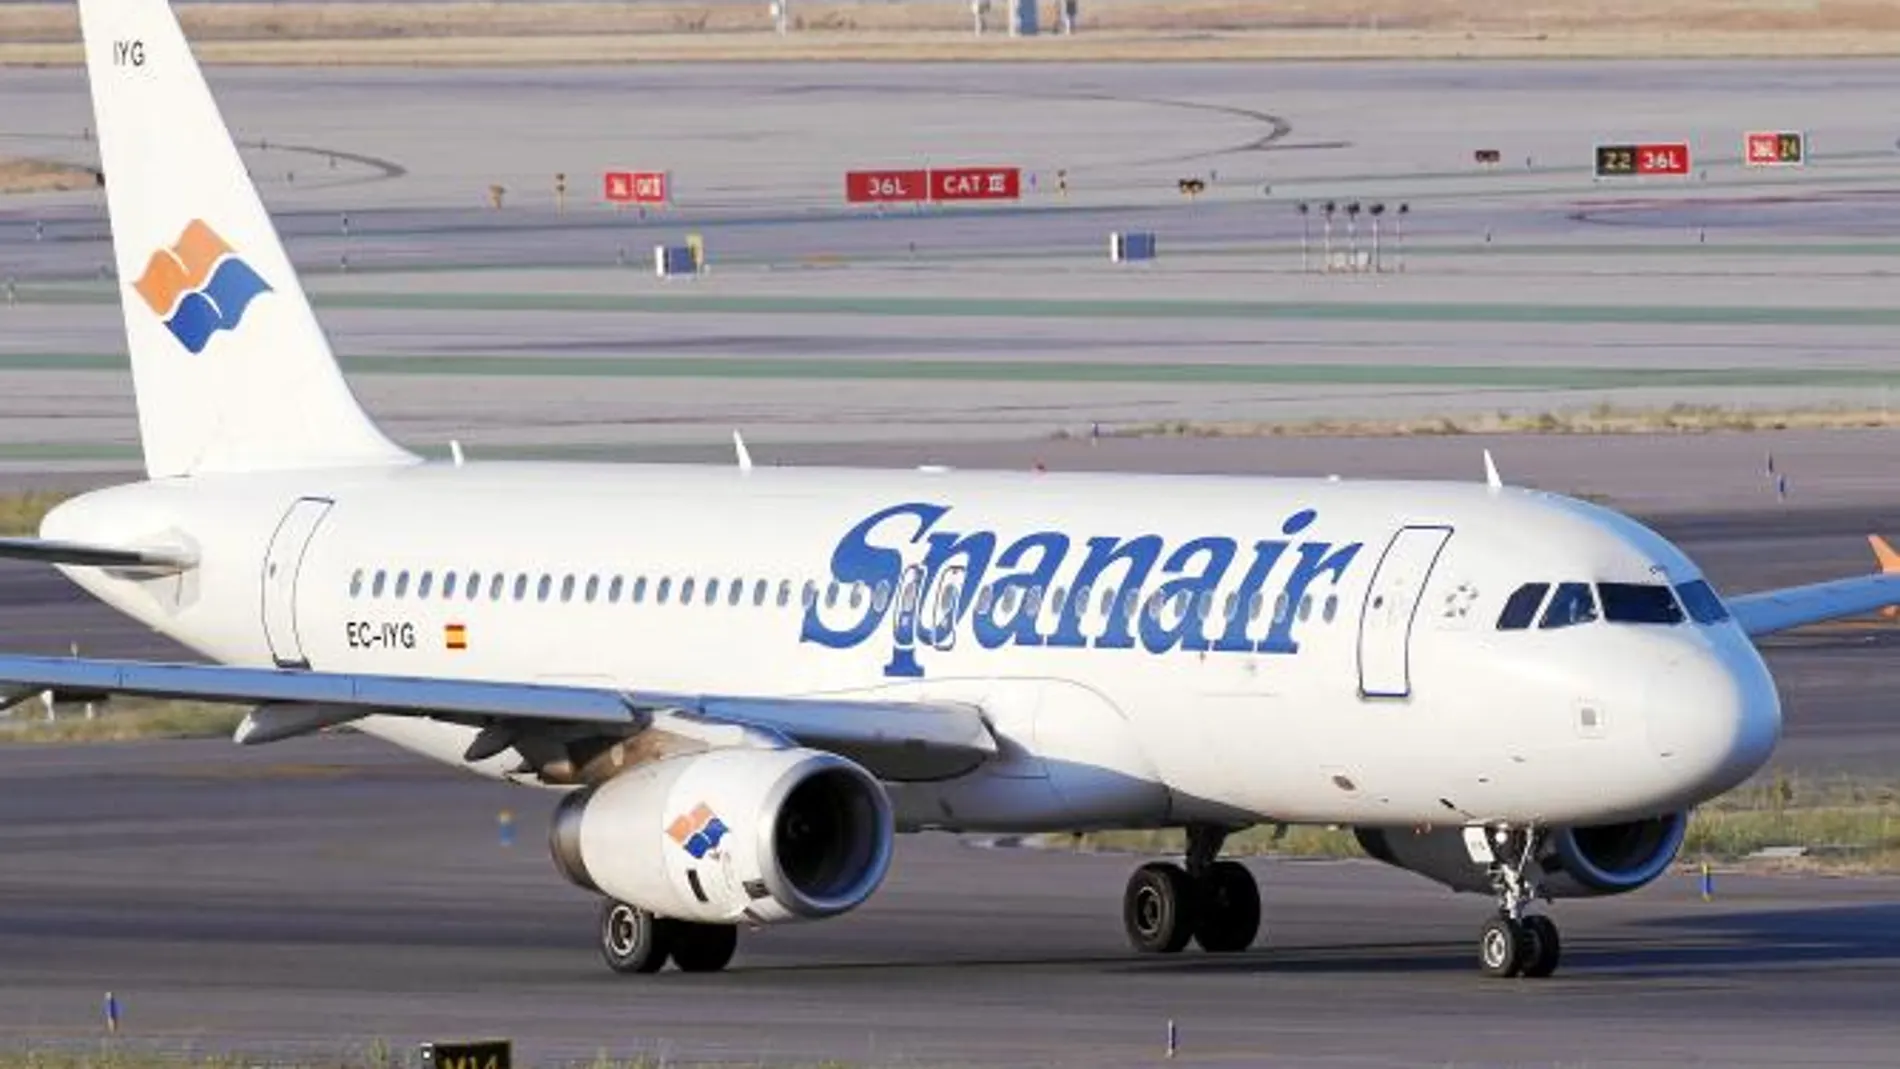 Spanair negocio con Qatar Airways su entrada como socio financiero